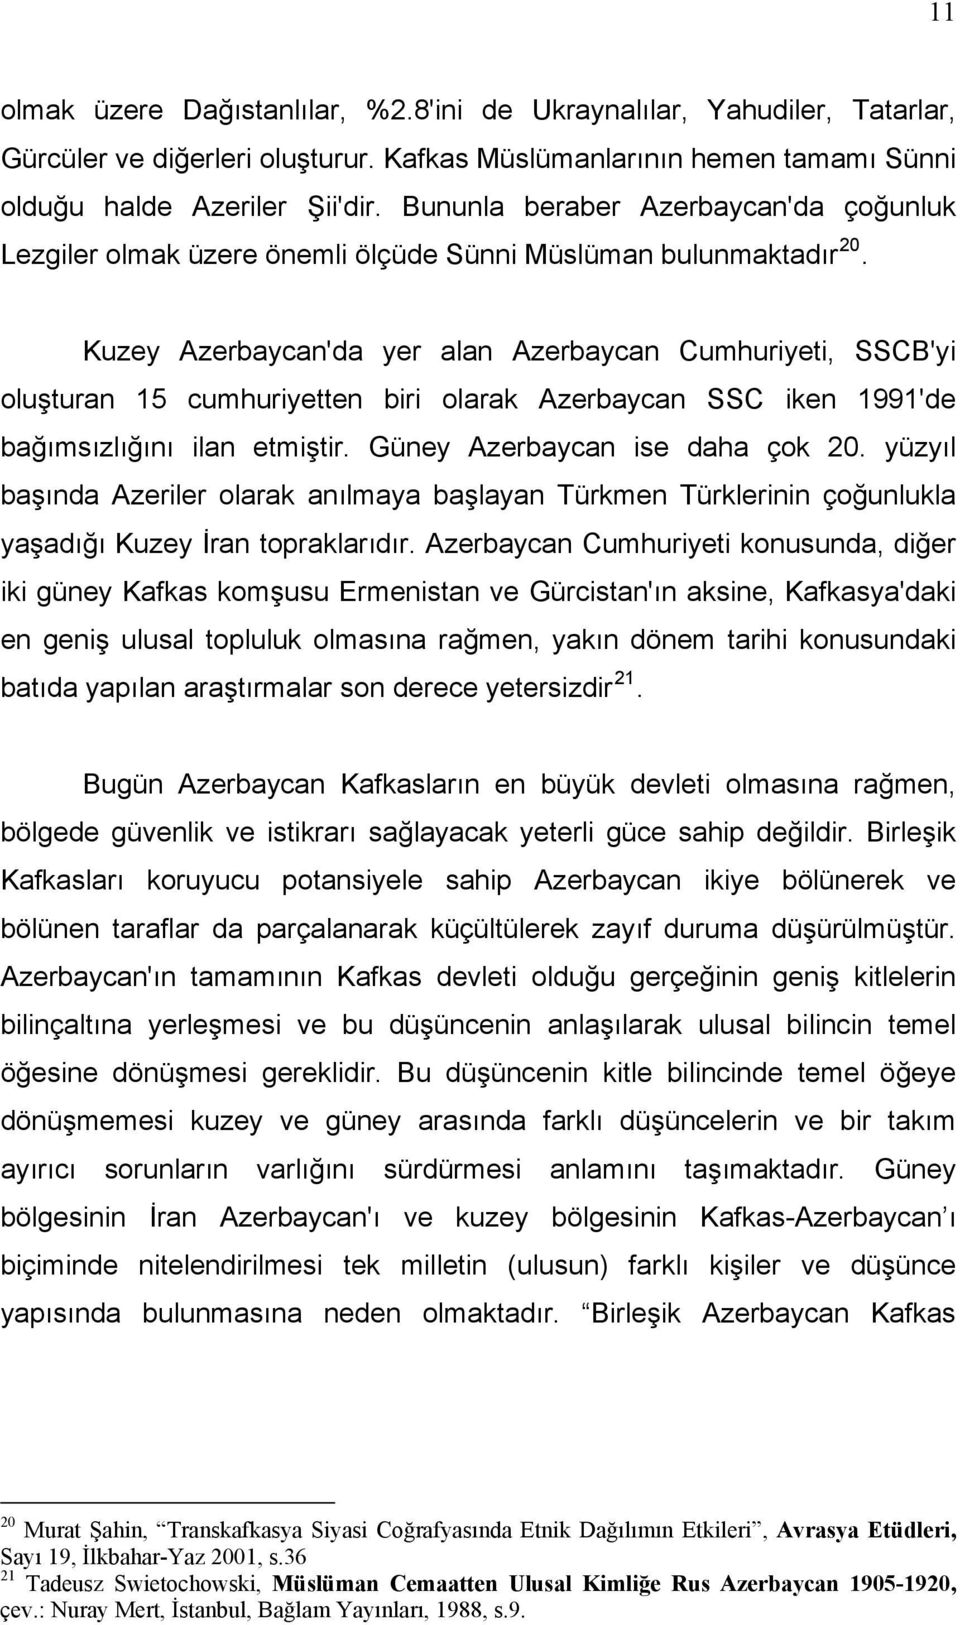 Kuzey Azerbaycan'da yer alan Azerbaycan Cumhuriyeti, SSCB'yi oluşturan 15 cumhuriyetten biri olarak Azerbaycan SSC iken 1991'de bağımsızlığını ilan etmiştir. Güney Azerbaycan ise daha çok 20.